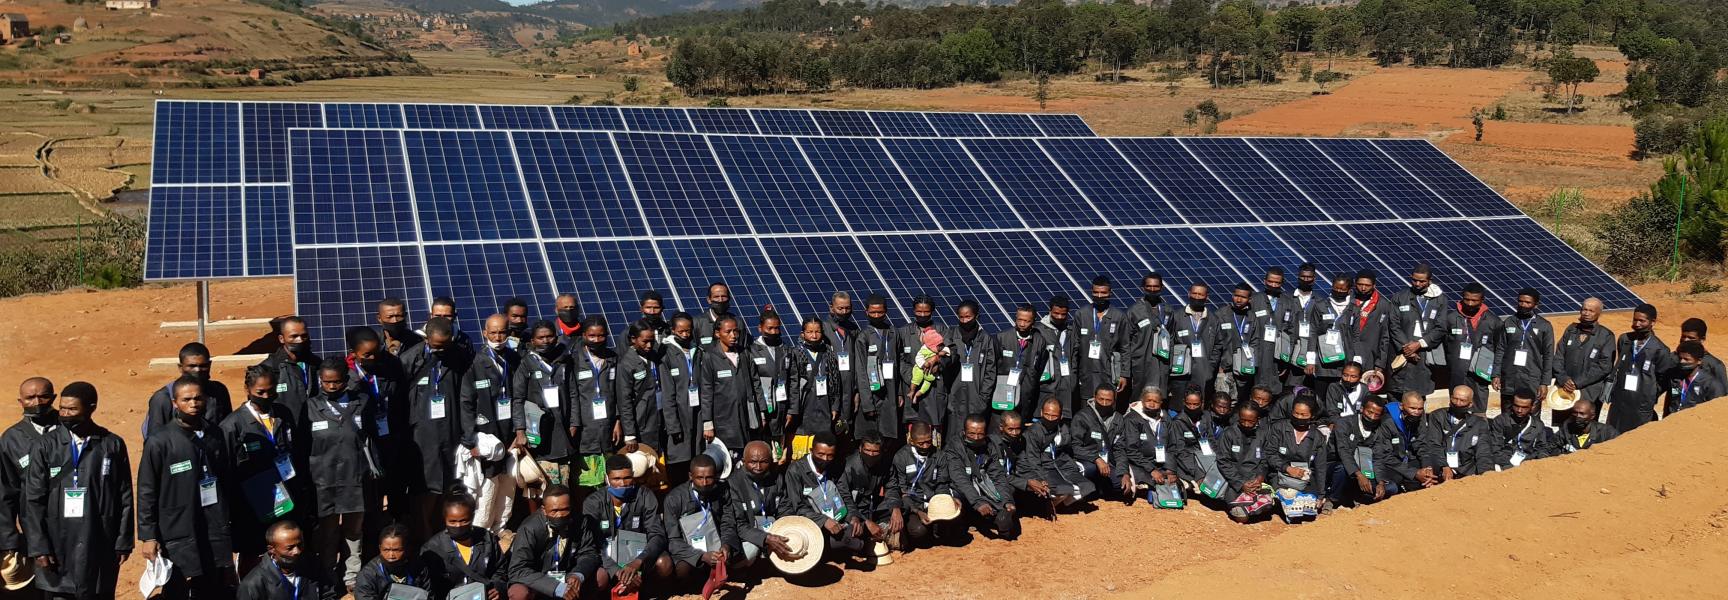 Paneles solares en Madagascar